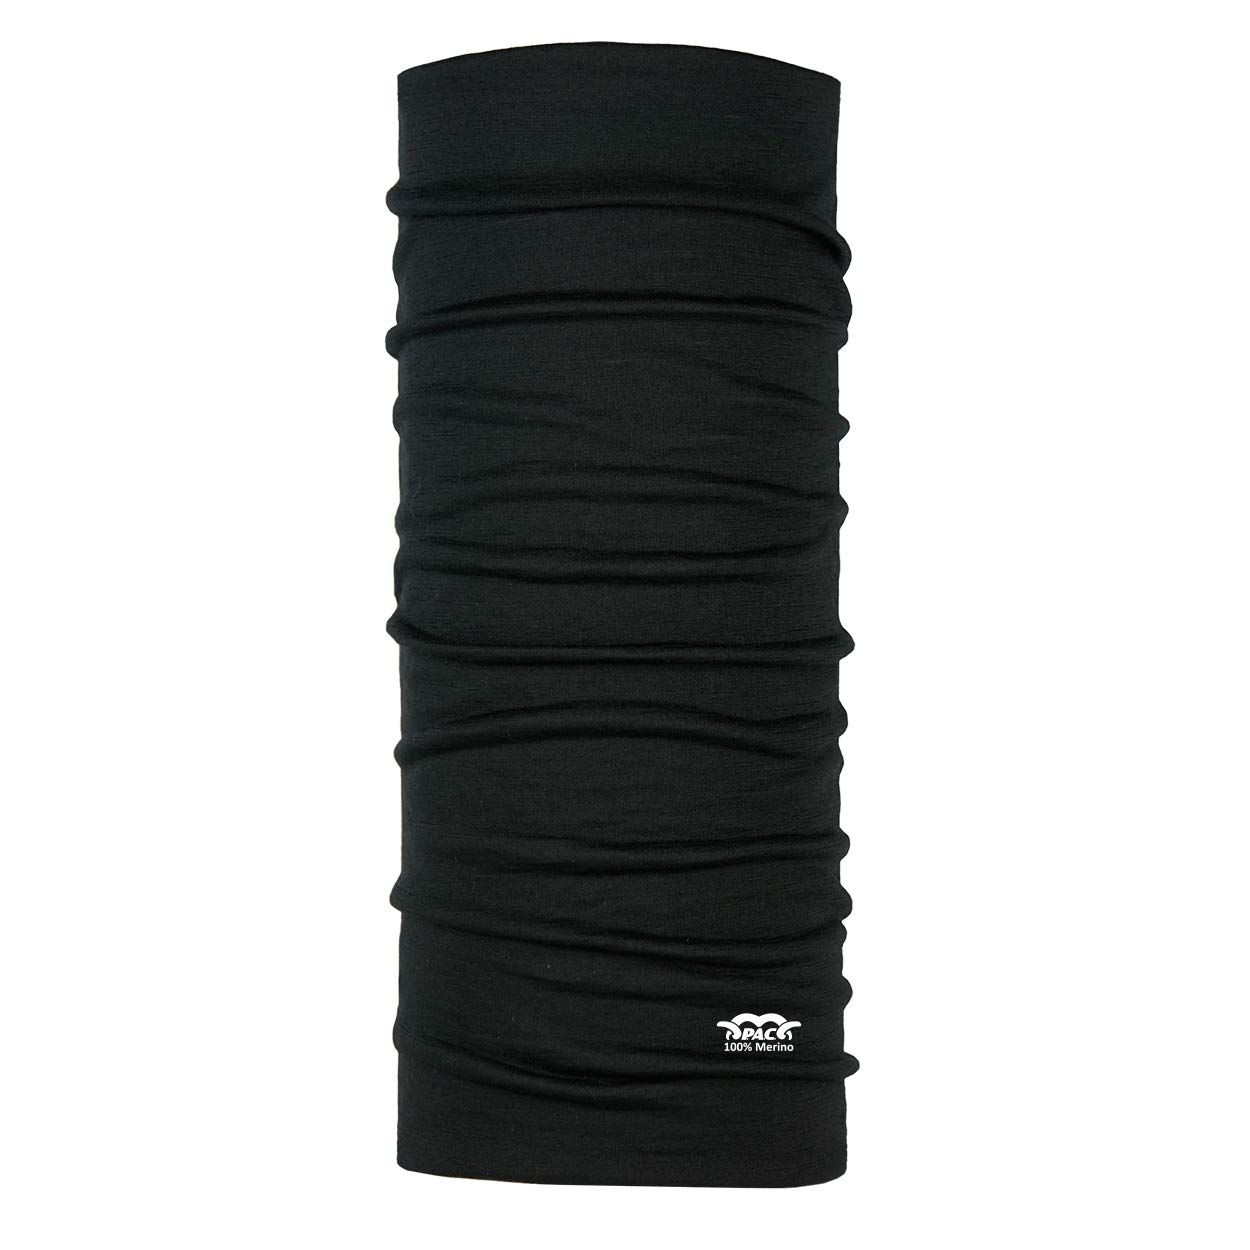 P.A.C. Kids Merino Wool Black Multifunktionstuch - Merinowoll Schlauchtuch, Halstuch, Schal, Kopftuch, Unisex, 10 Anwendungsmöglichkeiten